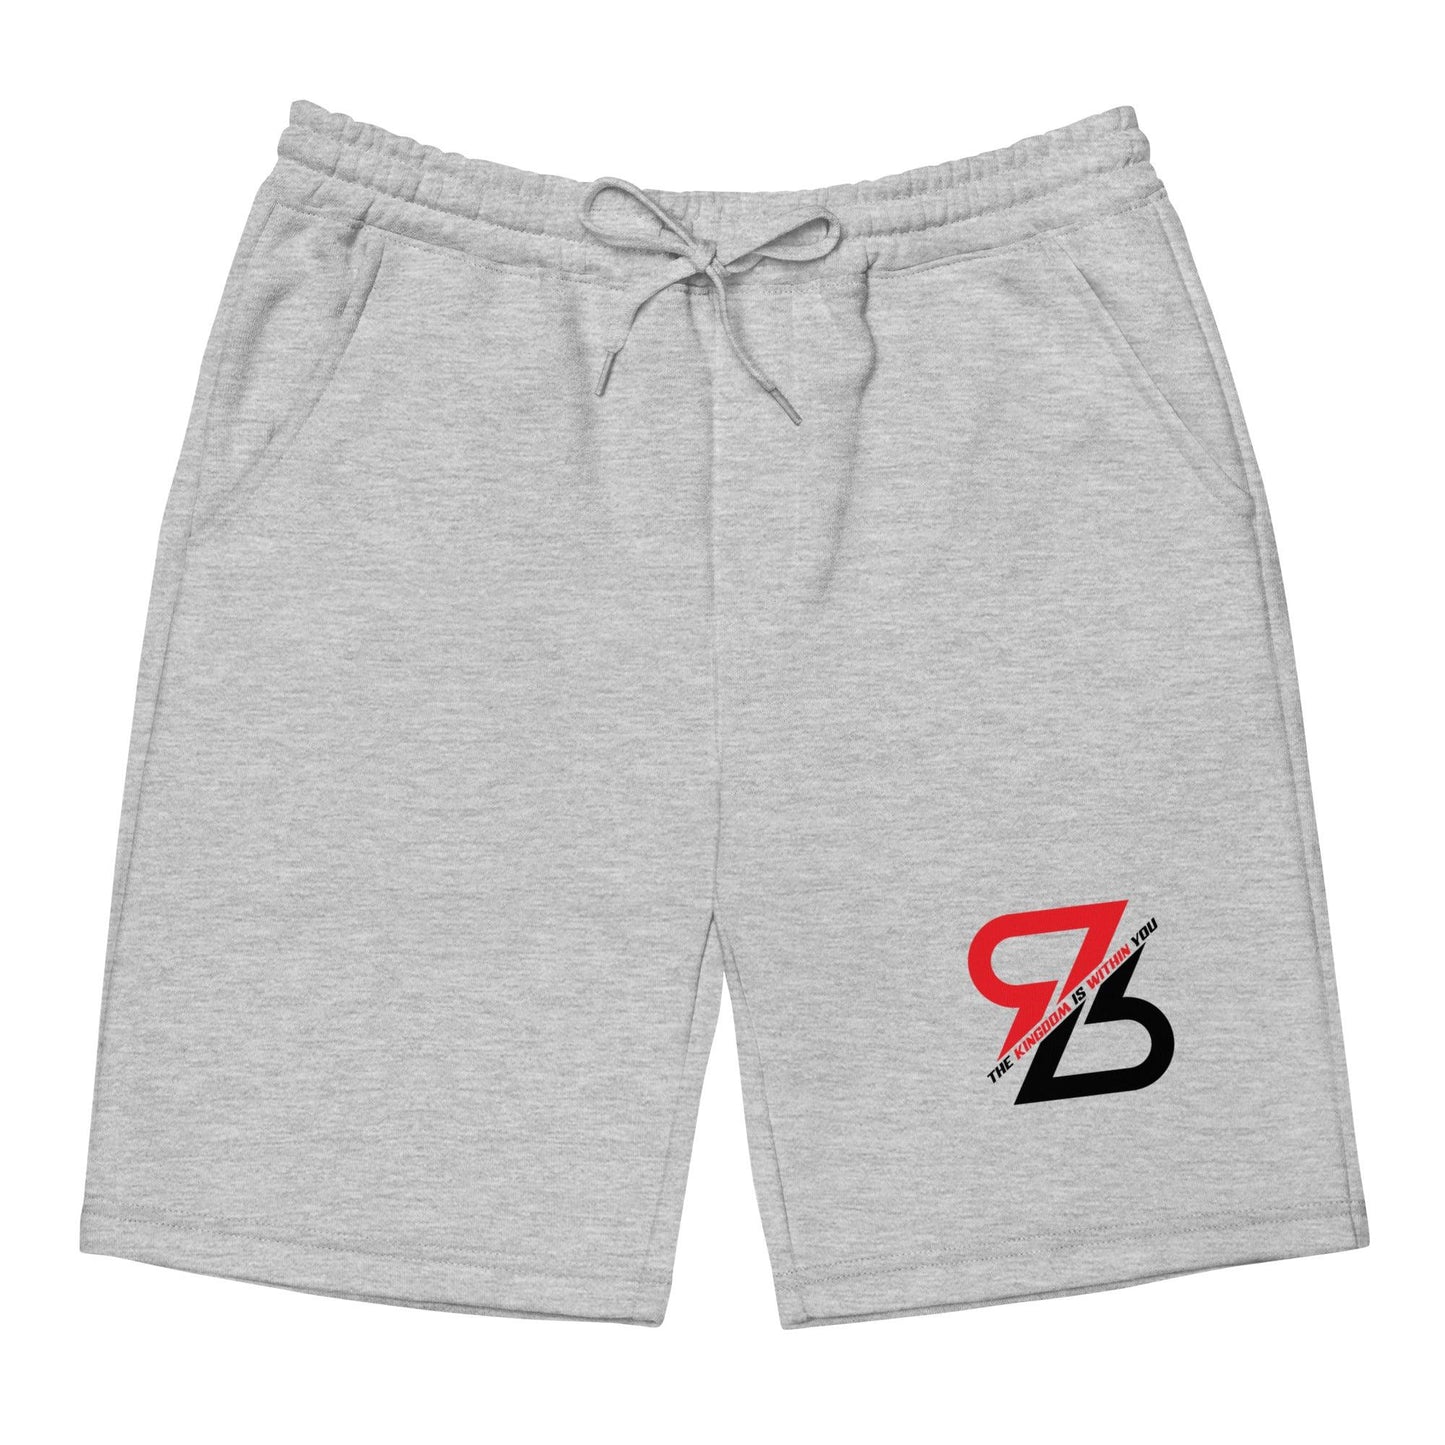 Reggie Begelton "RB" shorts - Fan Arch